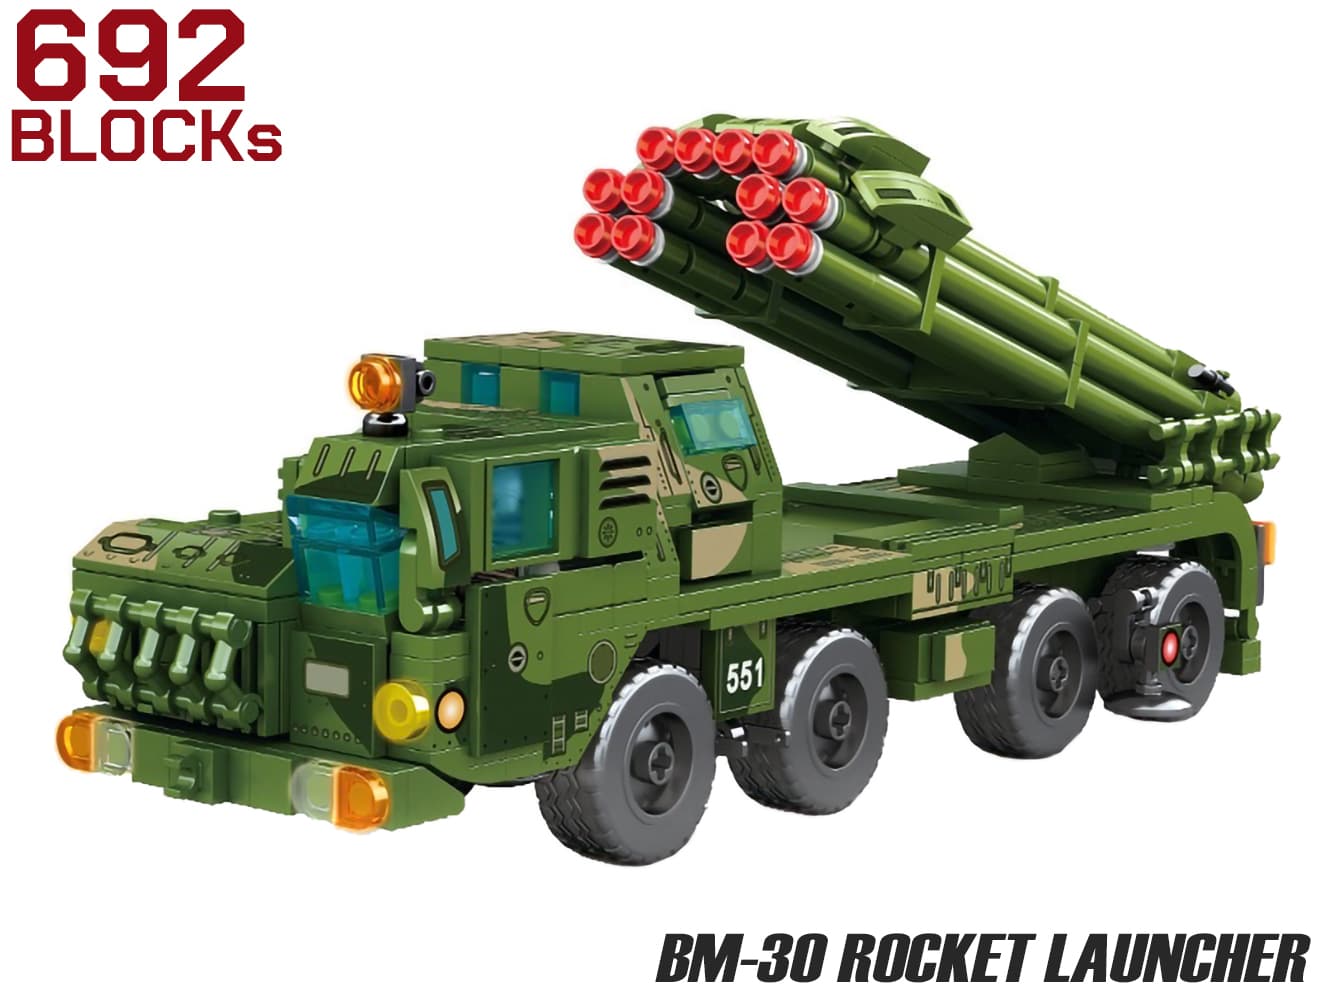 AFM BM-30 スメルチ ロケットランチャー 692Blocks ミリタリーベース – ミリタリーベース MILITARY BASE